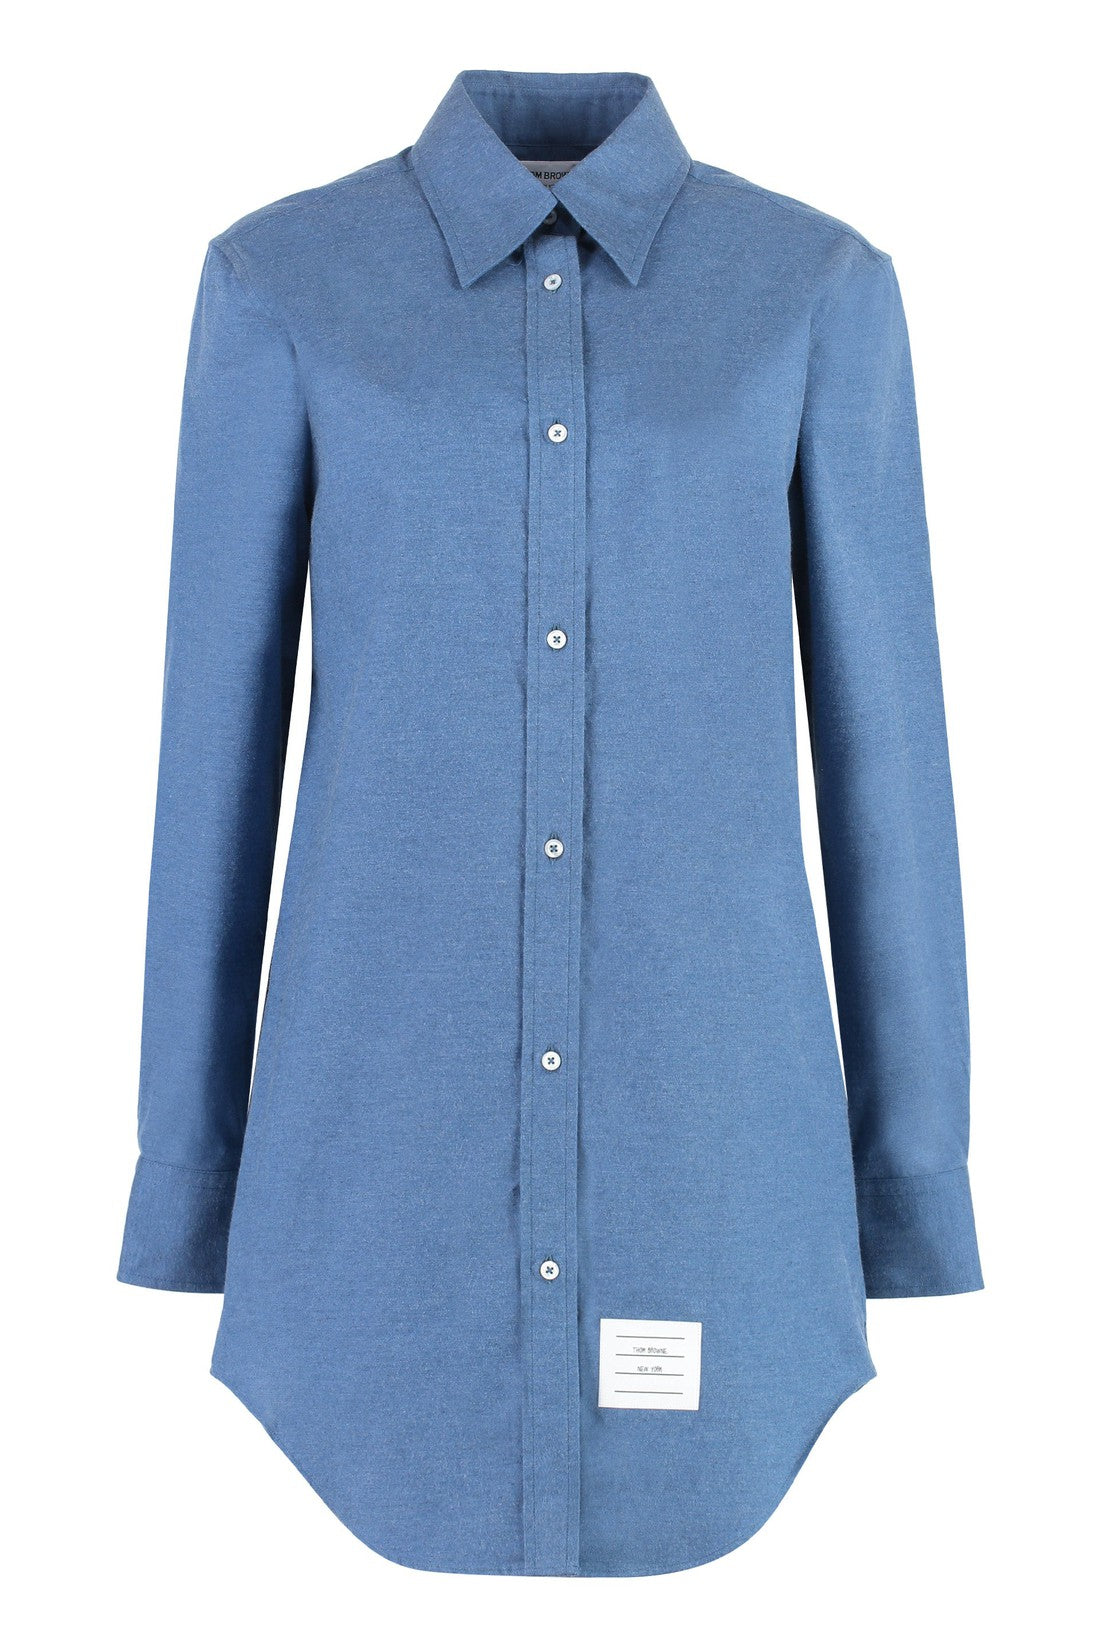 Thom Browne-OUTLET-SALE-Cotton shirt-ARCHIVIST